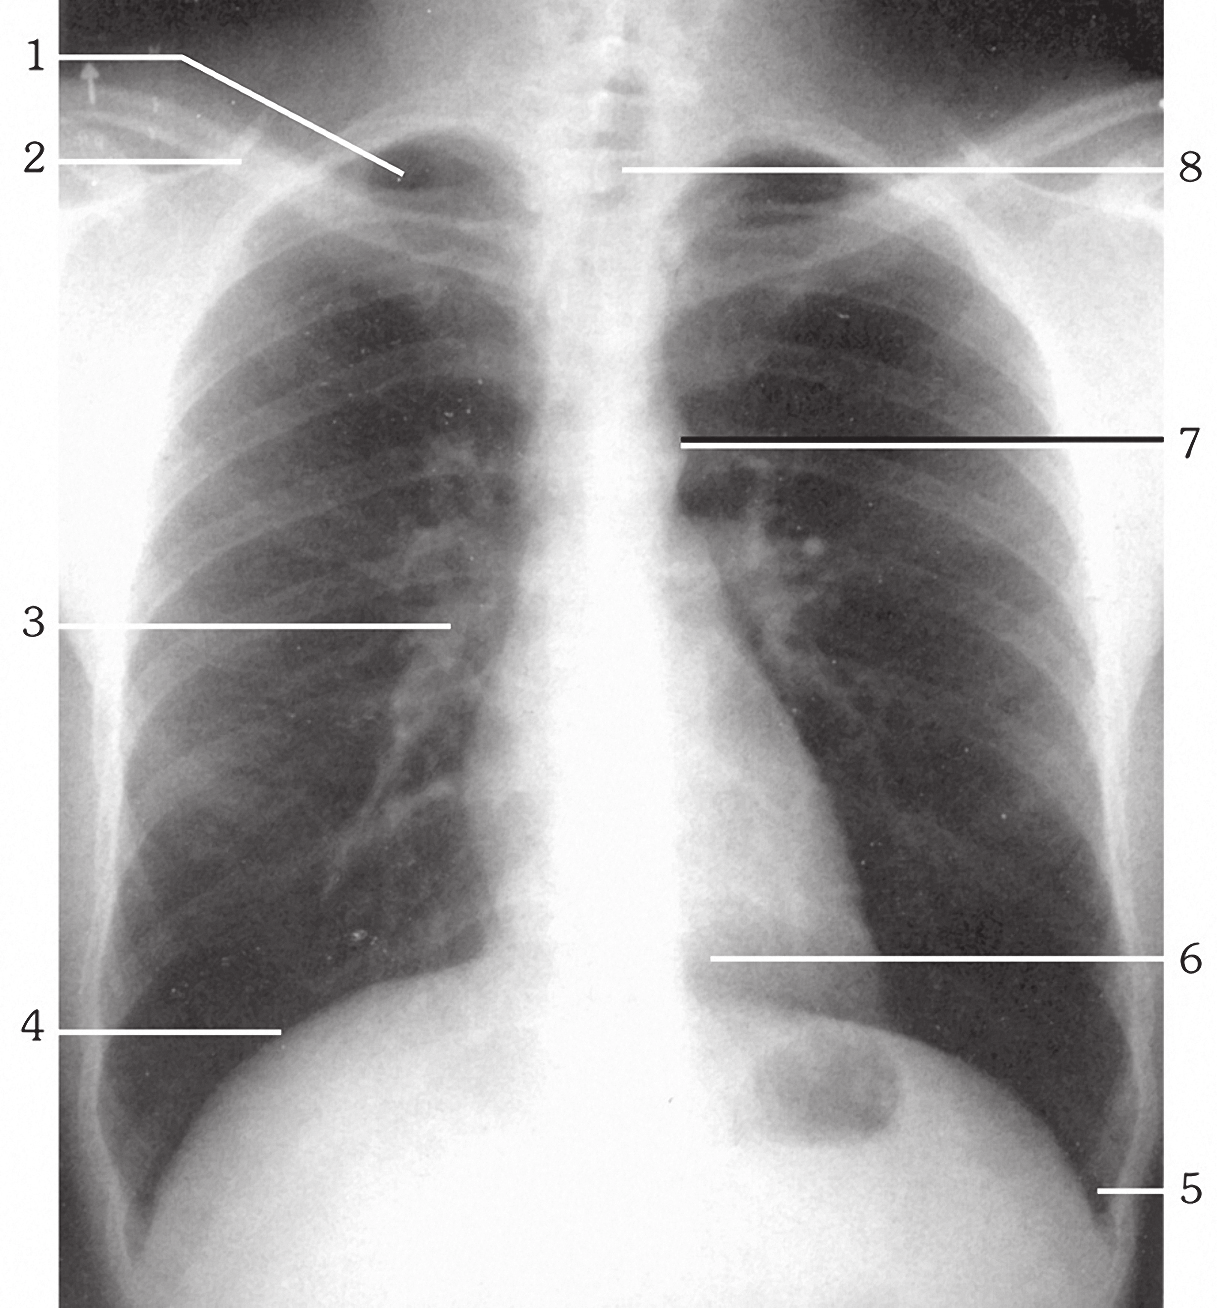 Βασικές Προβολές Αναπνευστικού Σύστηματος 73 Οι ερωτήσεις 65-69 αναφέρονται στην ακτινογραφική ανατομία της ο-π ακτινογραφίας θώρακα της παρακάτω εικόνας. Εικόνα 1.22. ( 1999 Κουμαριανός Δ.). 65. Ποιος αριθμός αντιστοιχεί στην κορυφή του πνεύμονα; 66.